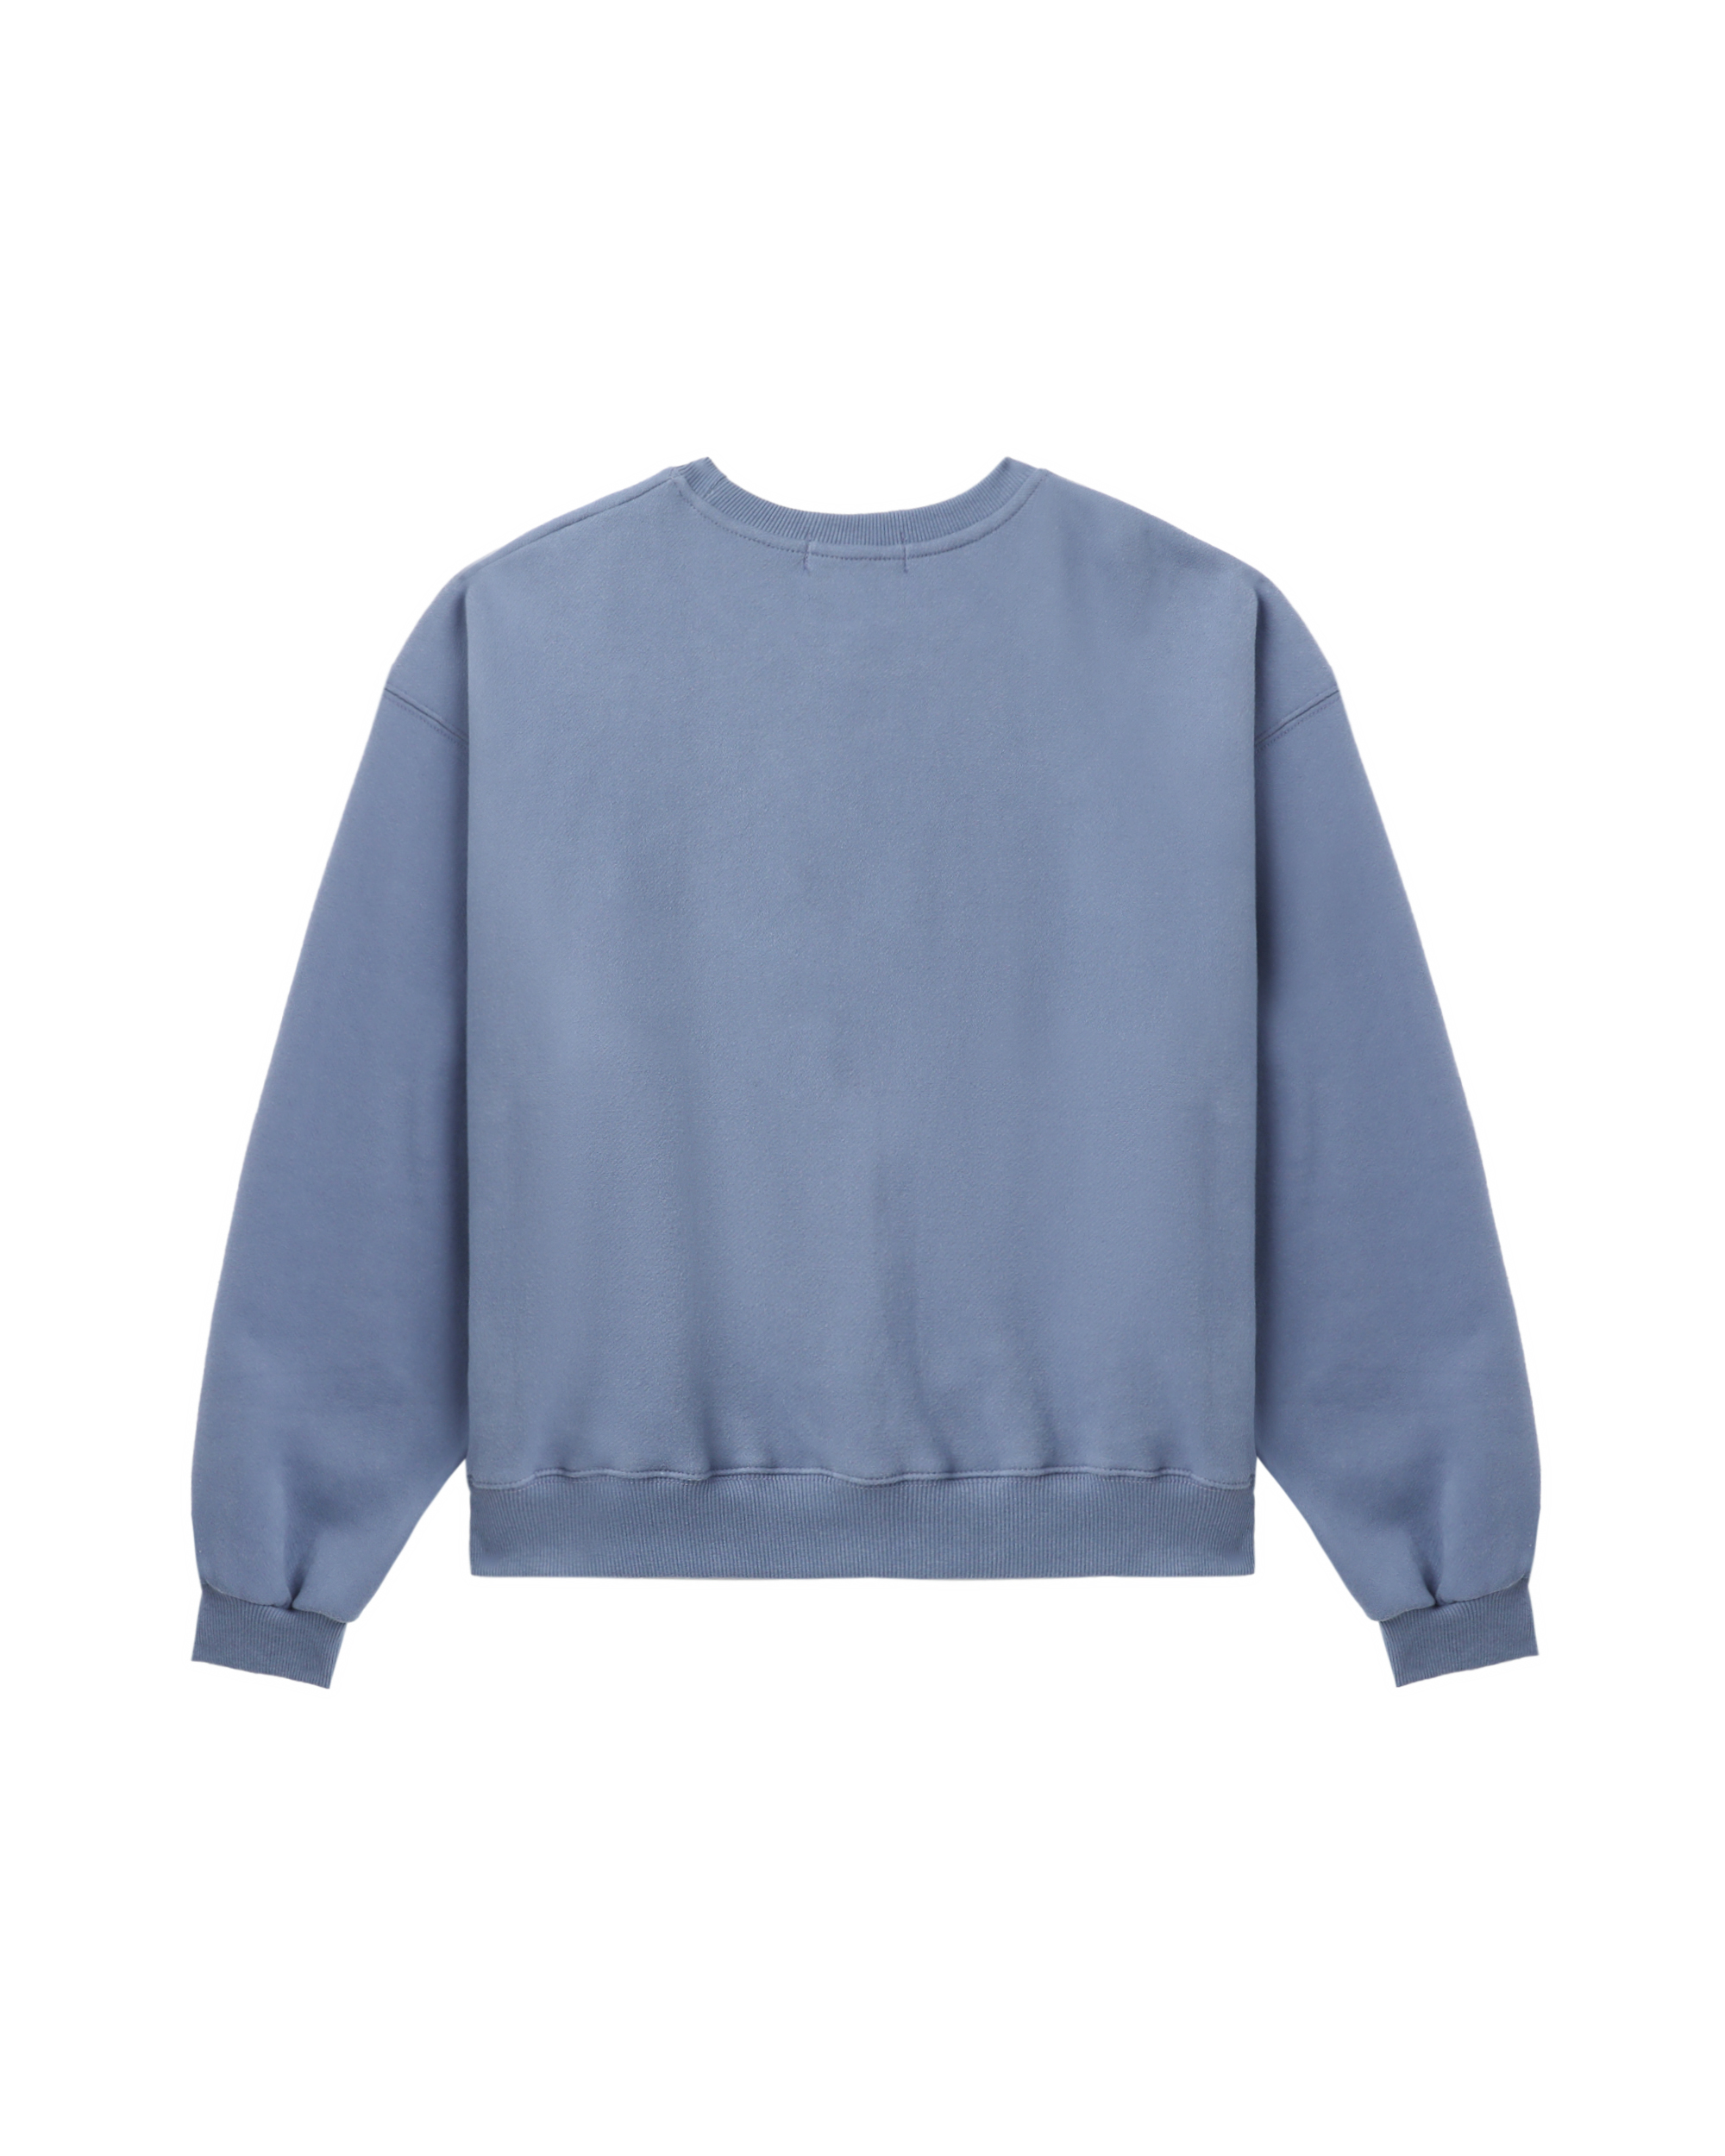 NOIRNINE Bebe sweatshirt | ITeSHOP